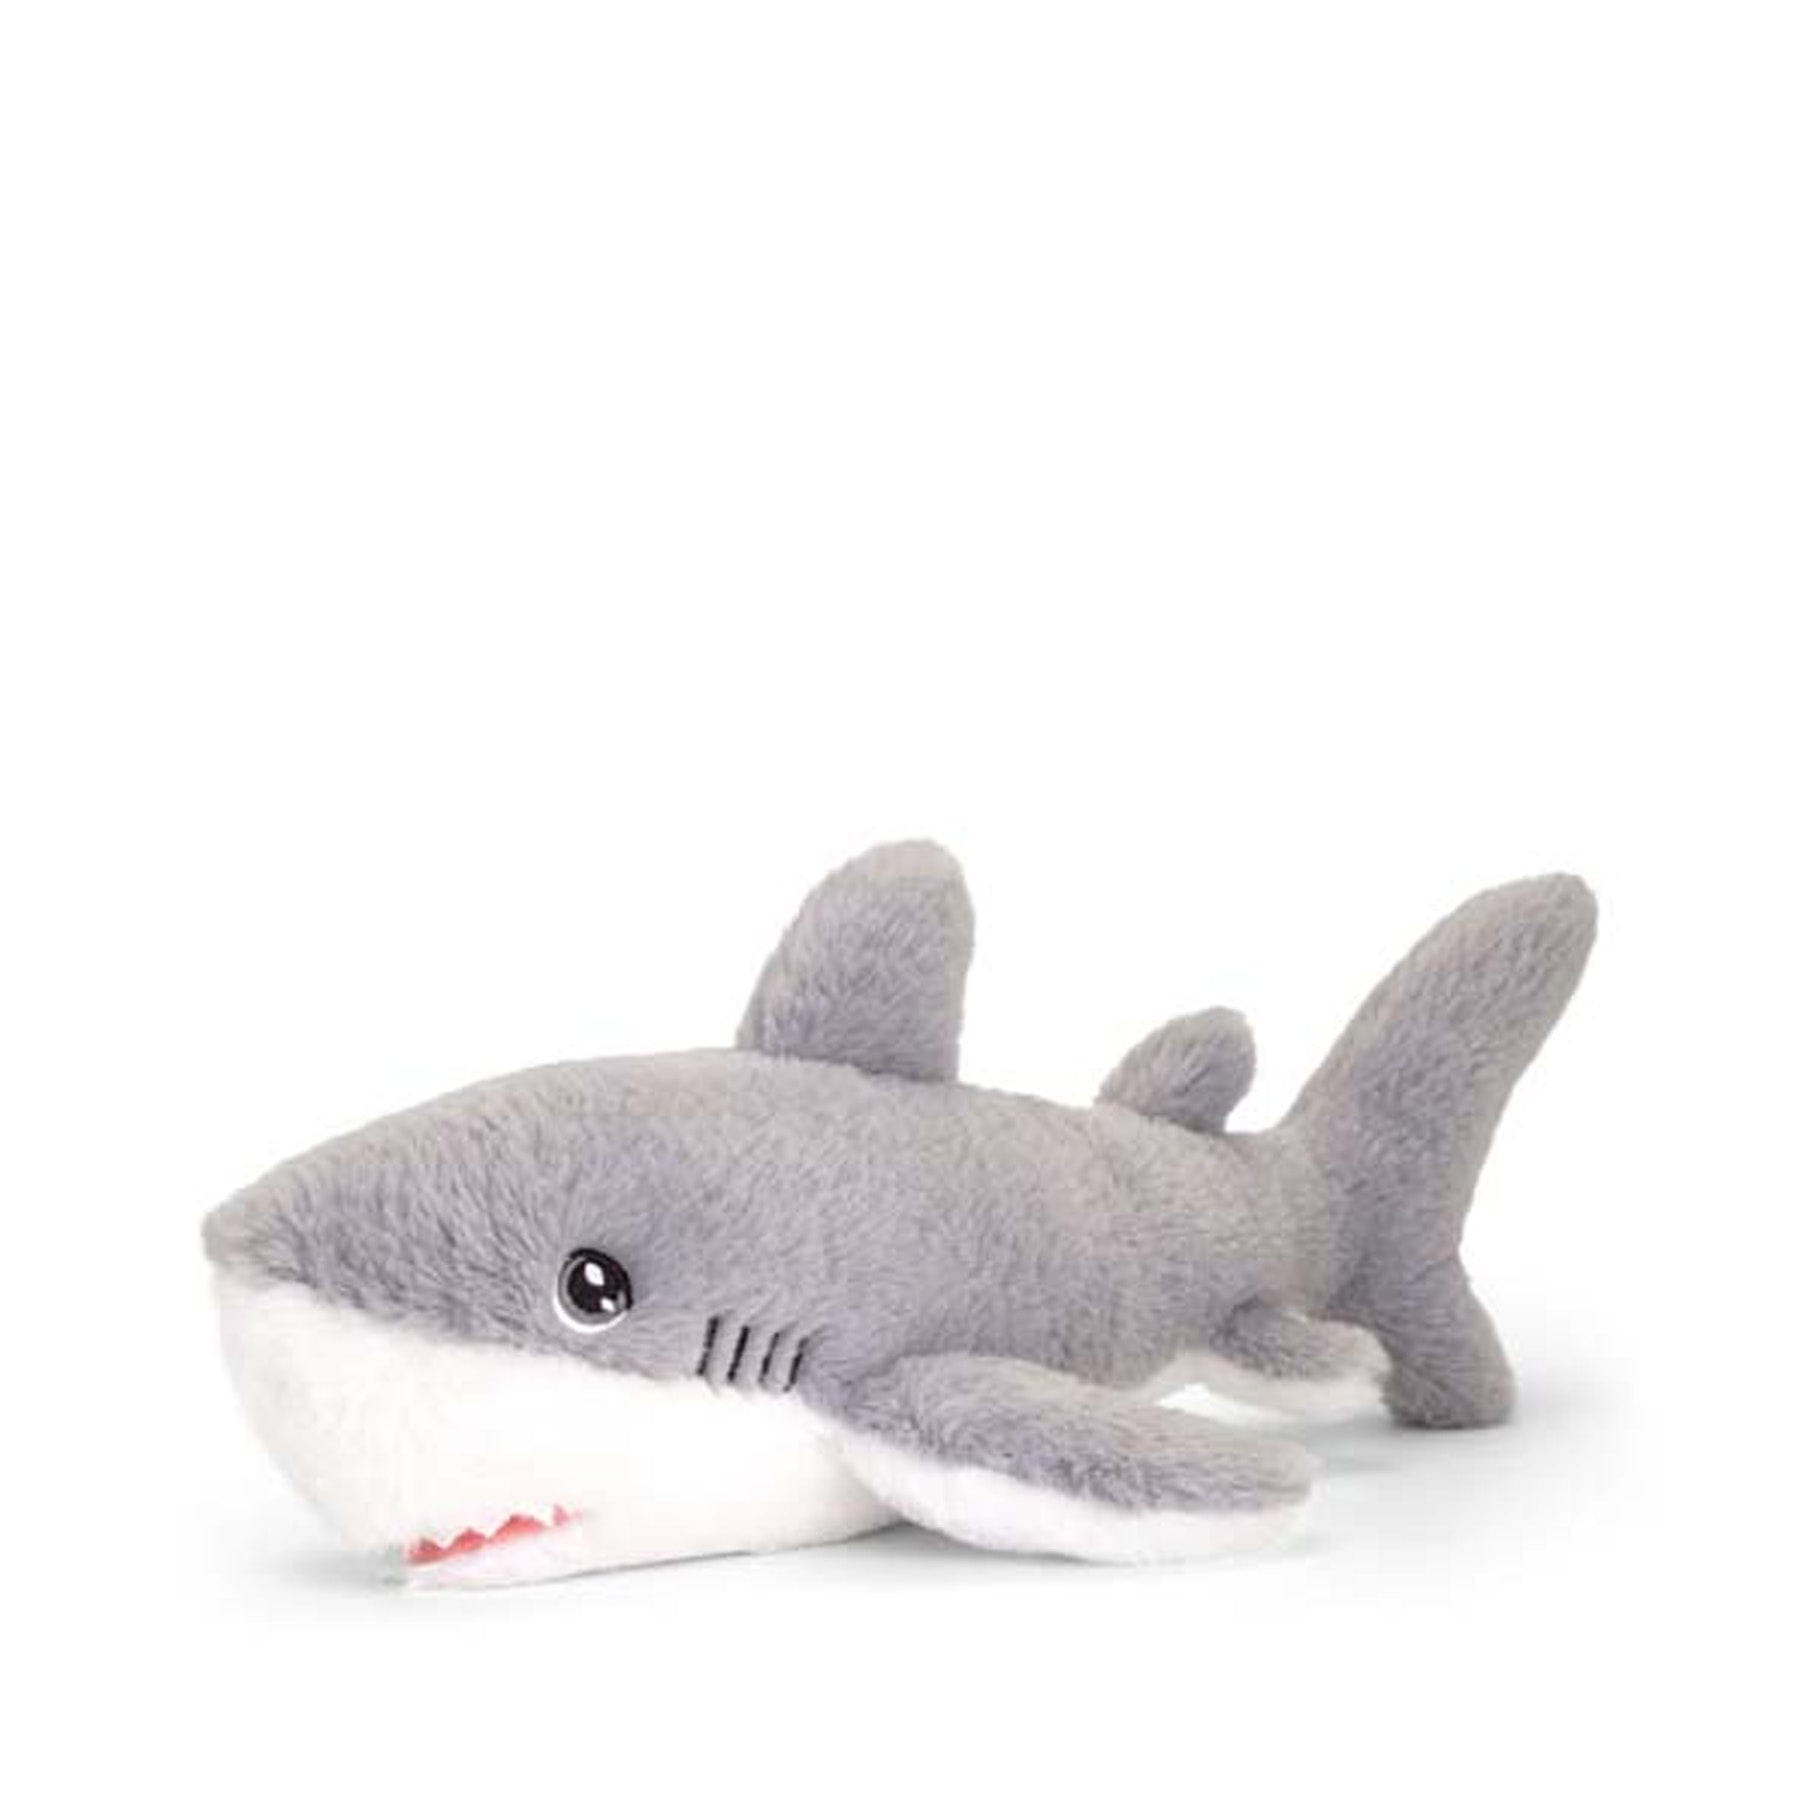 Keeleco shark 25cm